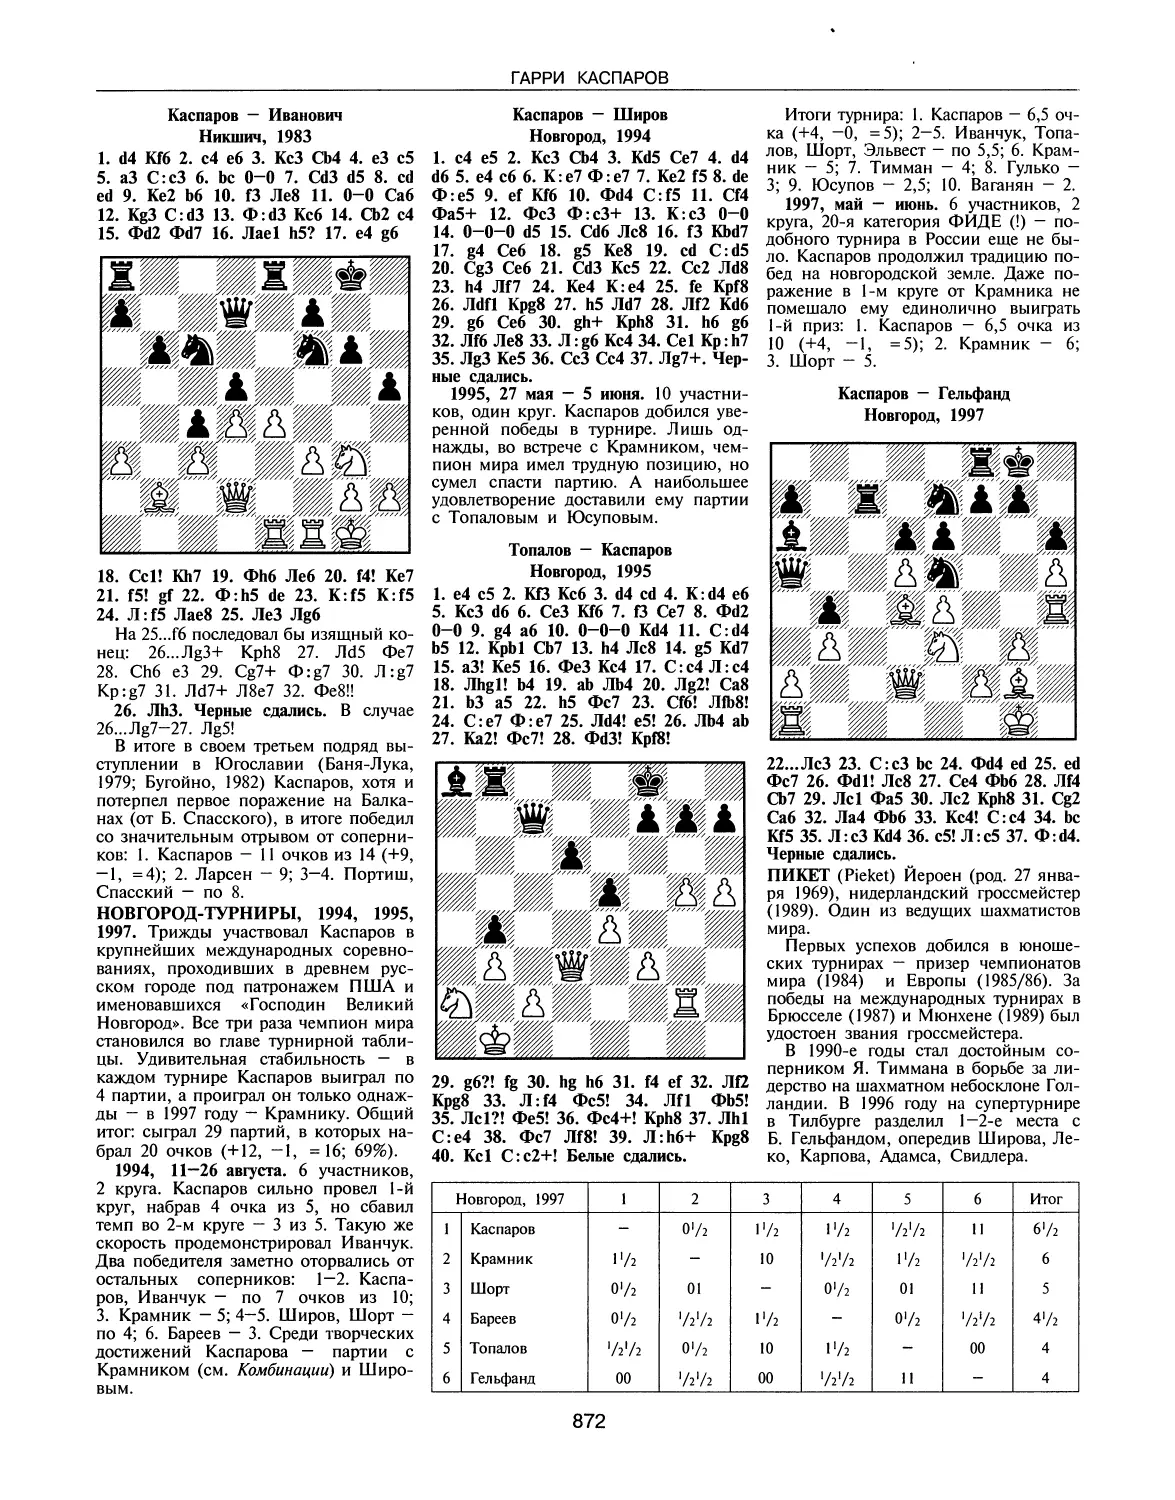 Новгород-турниры, 1994, 1995, 1997
Пикет И.